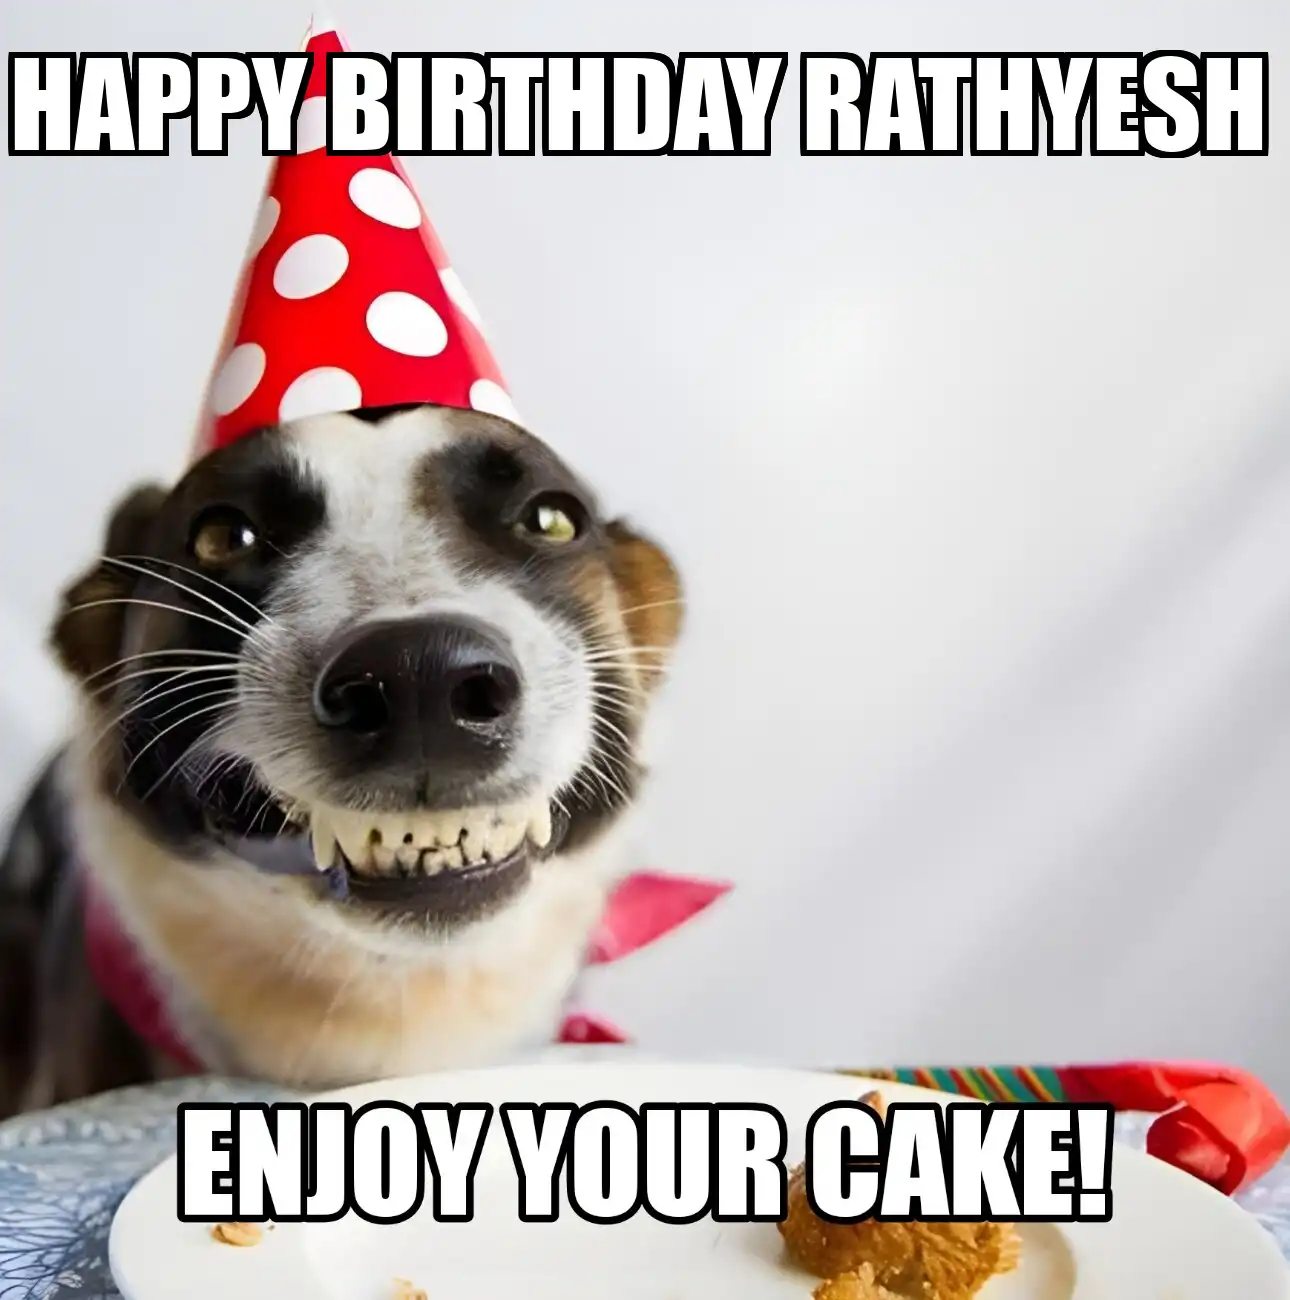 Happy Birthday Rathyesh Enjoy Your Cake Dog Meme